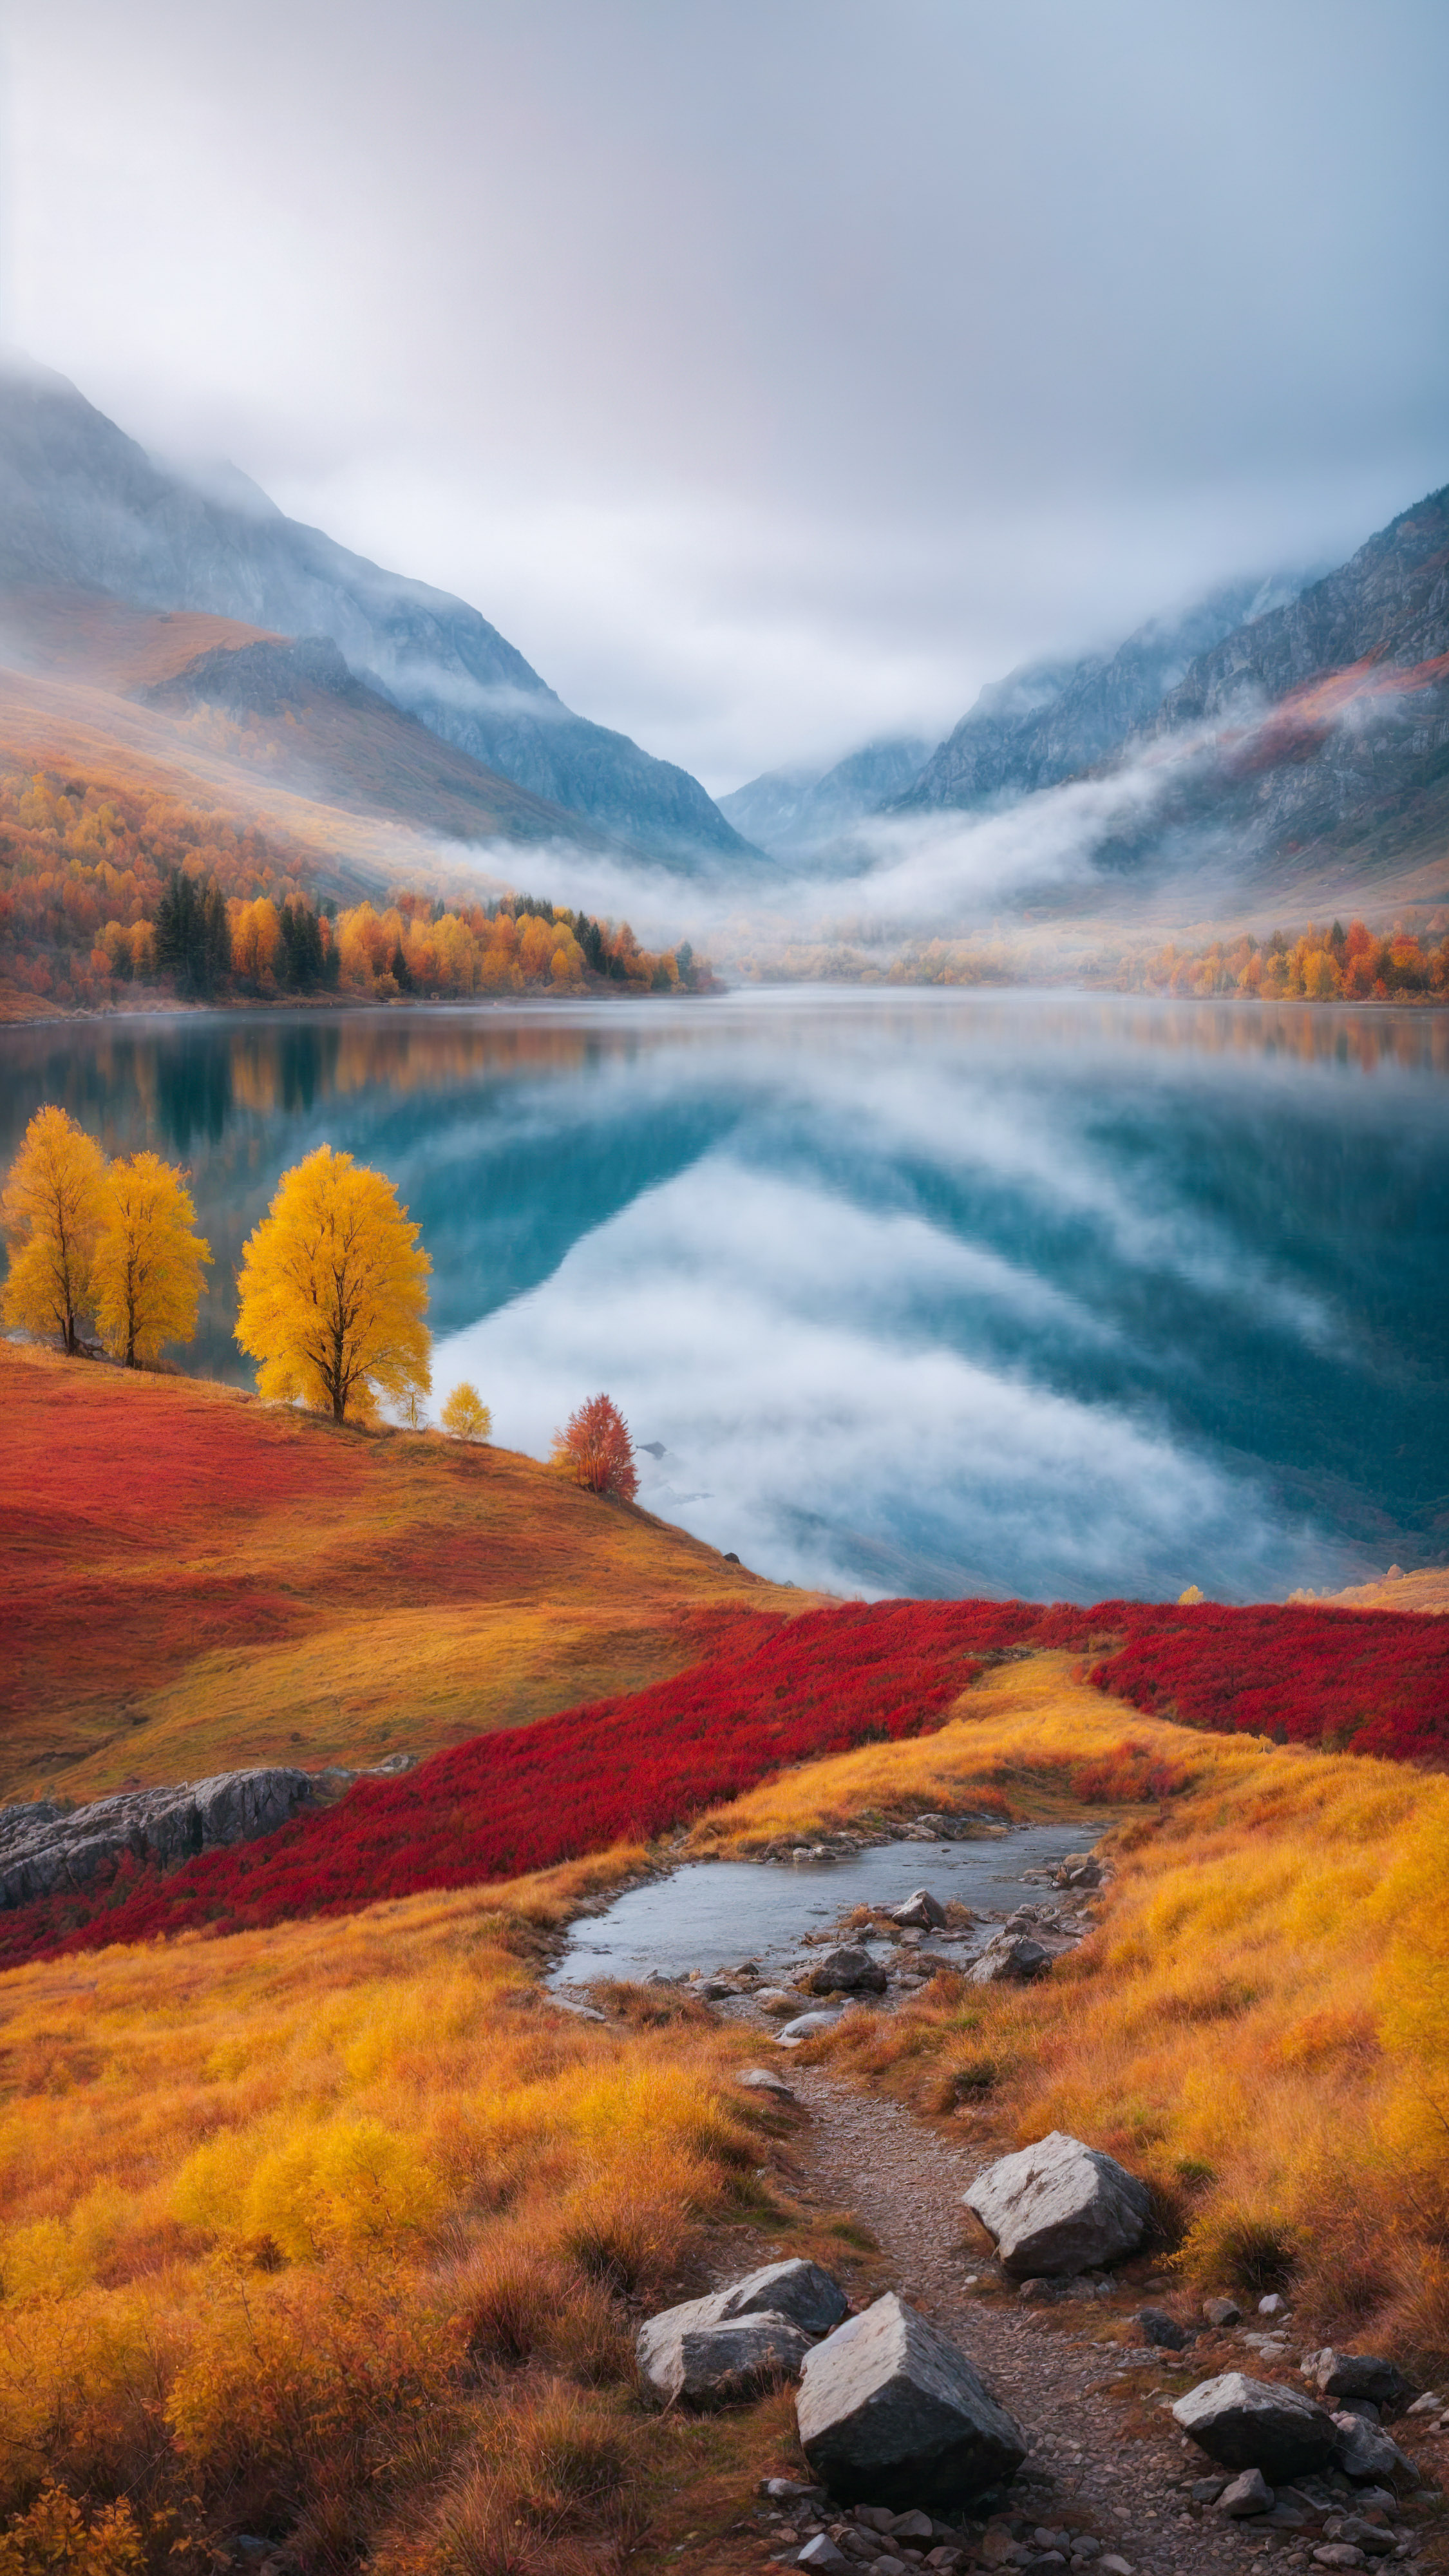 Transformez l'apparence de votre appareil avec un fond d'écran pour iPhone présentant un paysage automnal coloré de montagnes, avec des arbres jaunes et rouges et un lac brumeux.